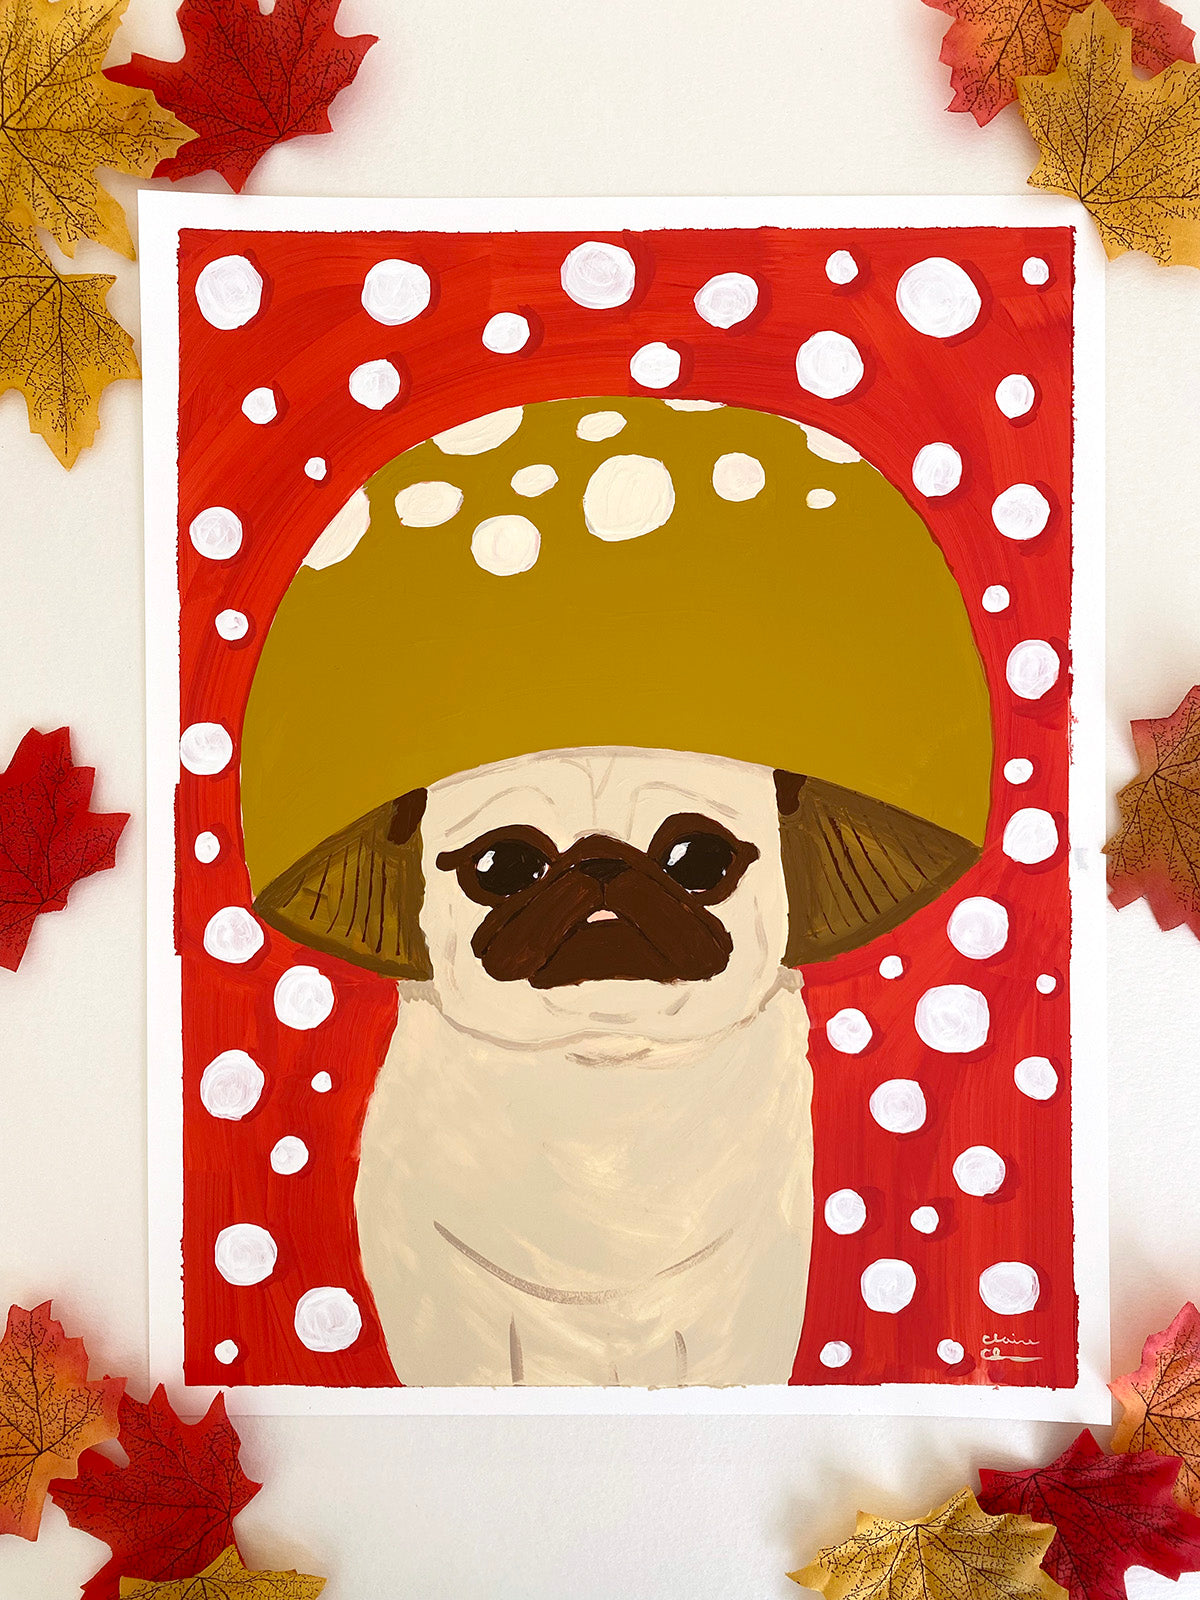 Mushroom Pug - Original Pug Painting